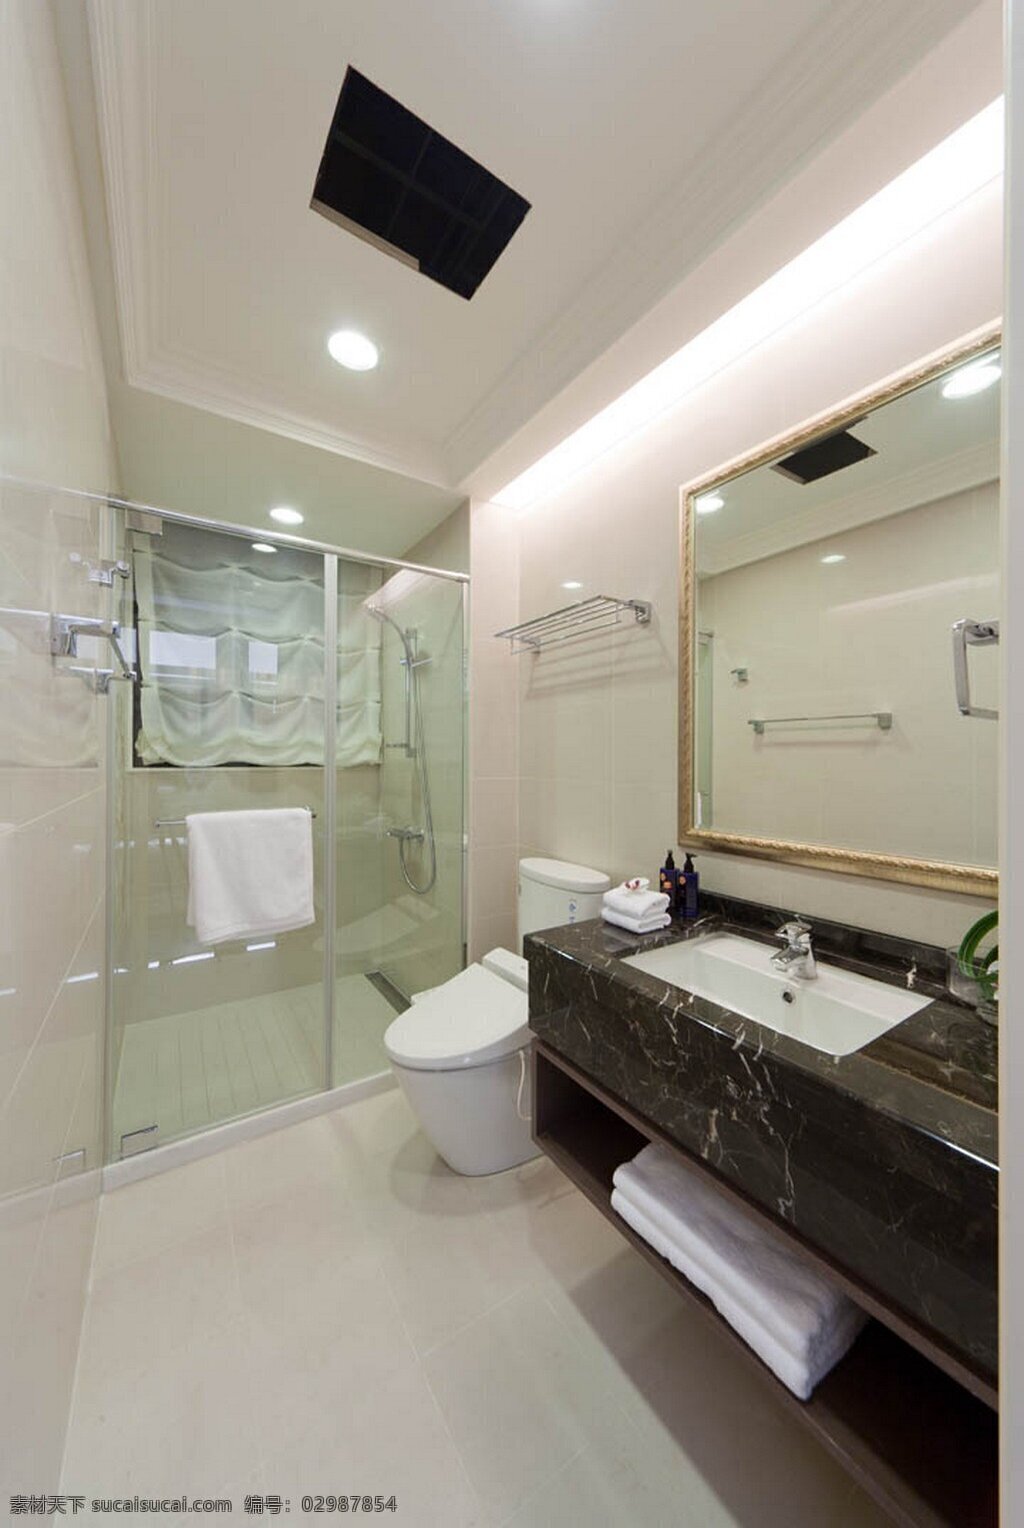 现代 浴室 玻璃门 室内装修 效果图 浴室装修 白色地板 白色背景墙 深色洗手台